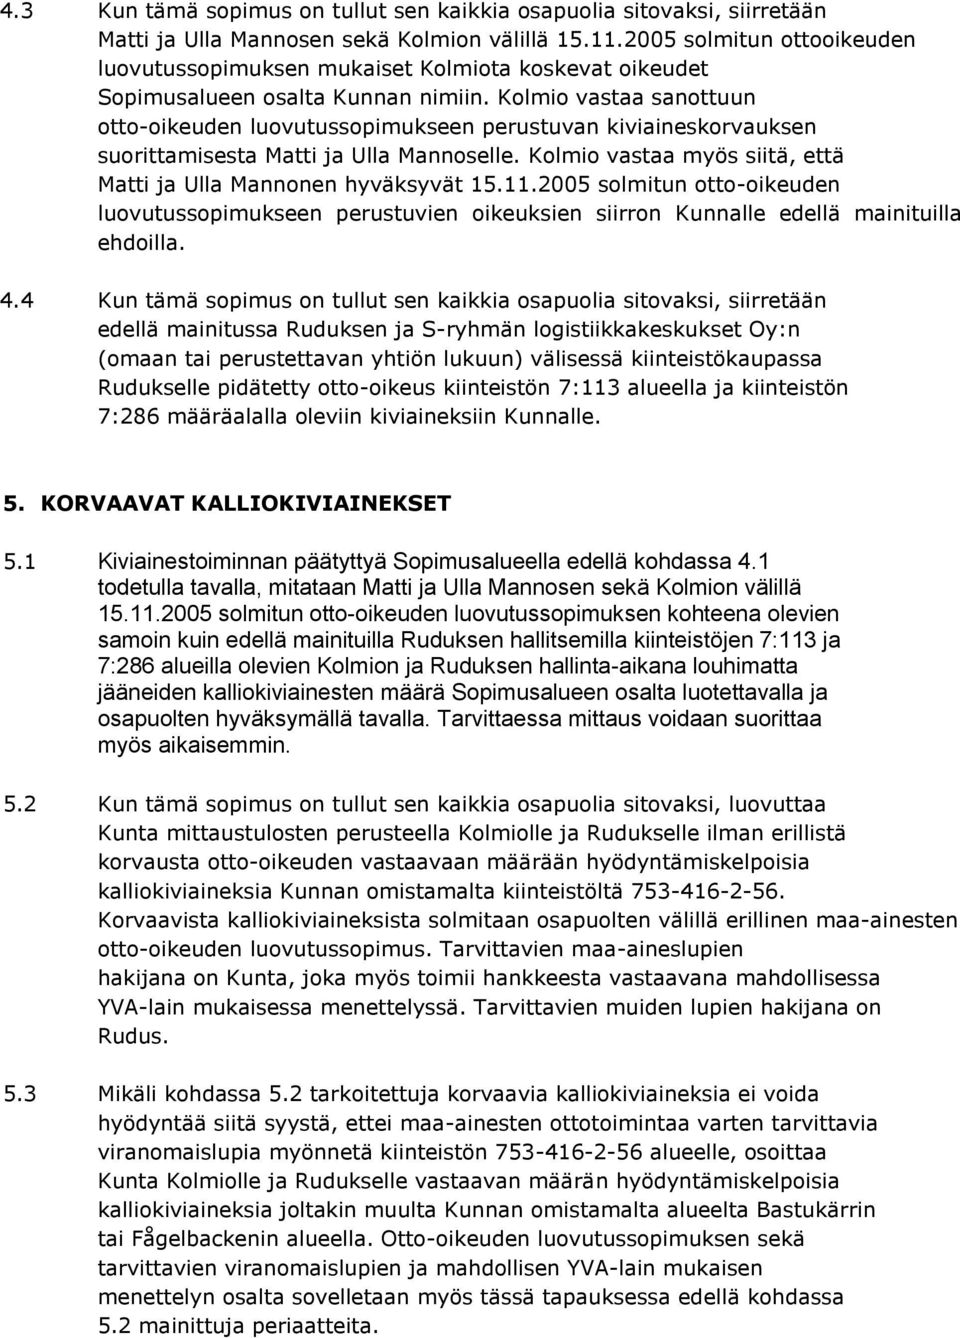 Kolmio vastaa sanottuun otto-oikeuden luovutussopimukseen perustuvan kiviaineskorvauksen suorittamisesta Matti ja Ulla Mannoselle. Kolmio vastaa myös siitä, että Matti ja Ulla Mannonen hyväksyvät 15.